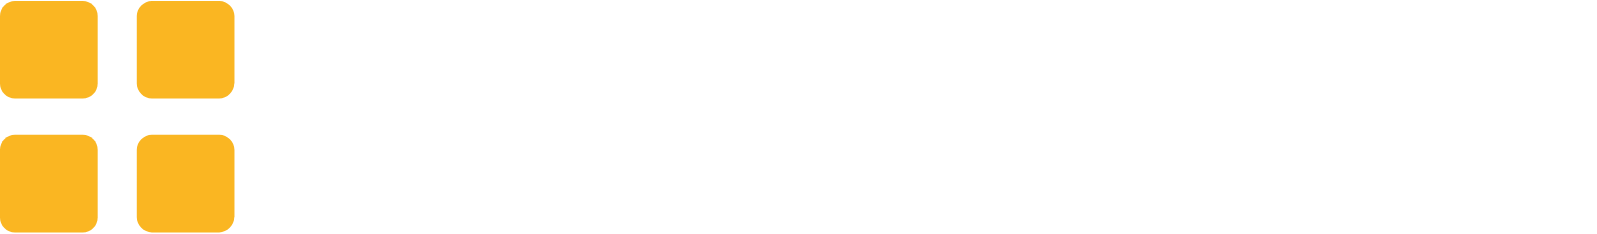 Greggs logo large for dark backgrounds (transparent PNG)